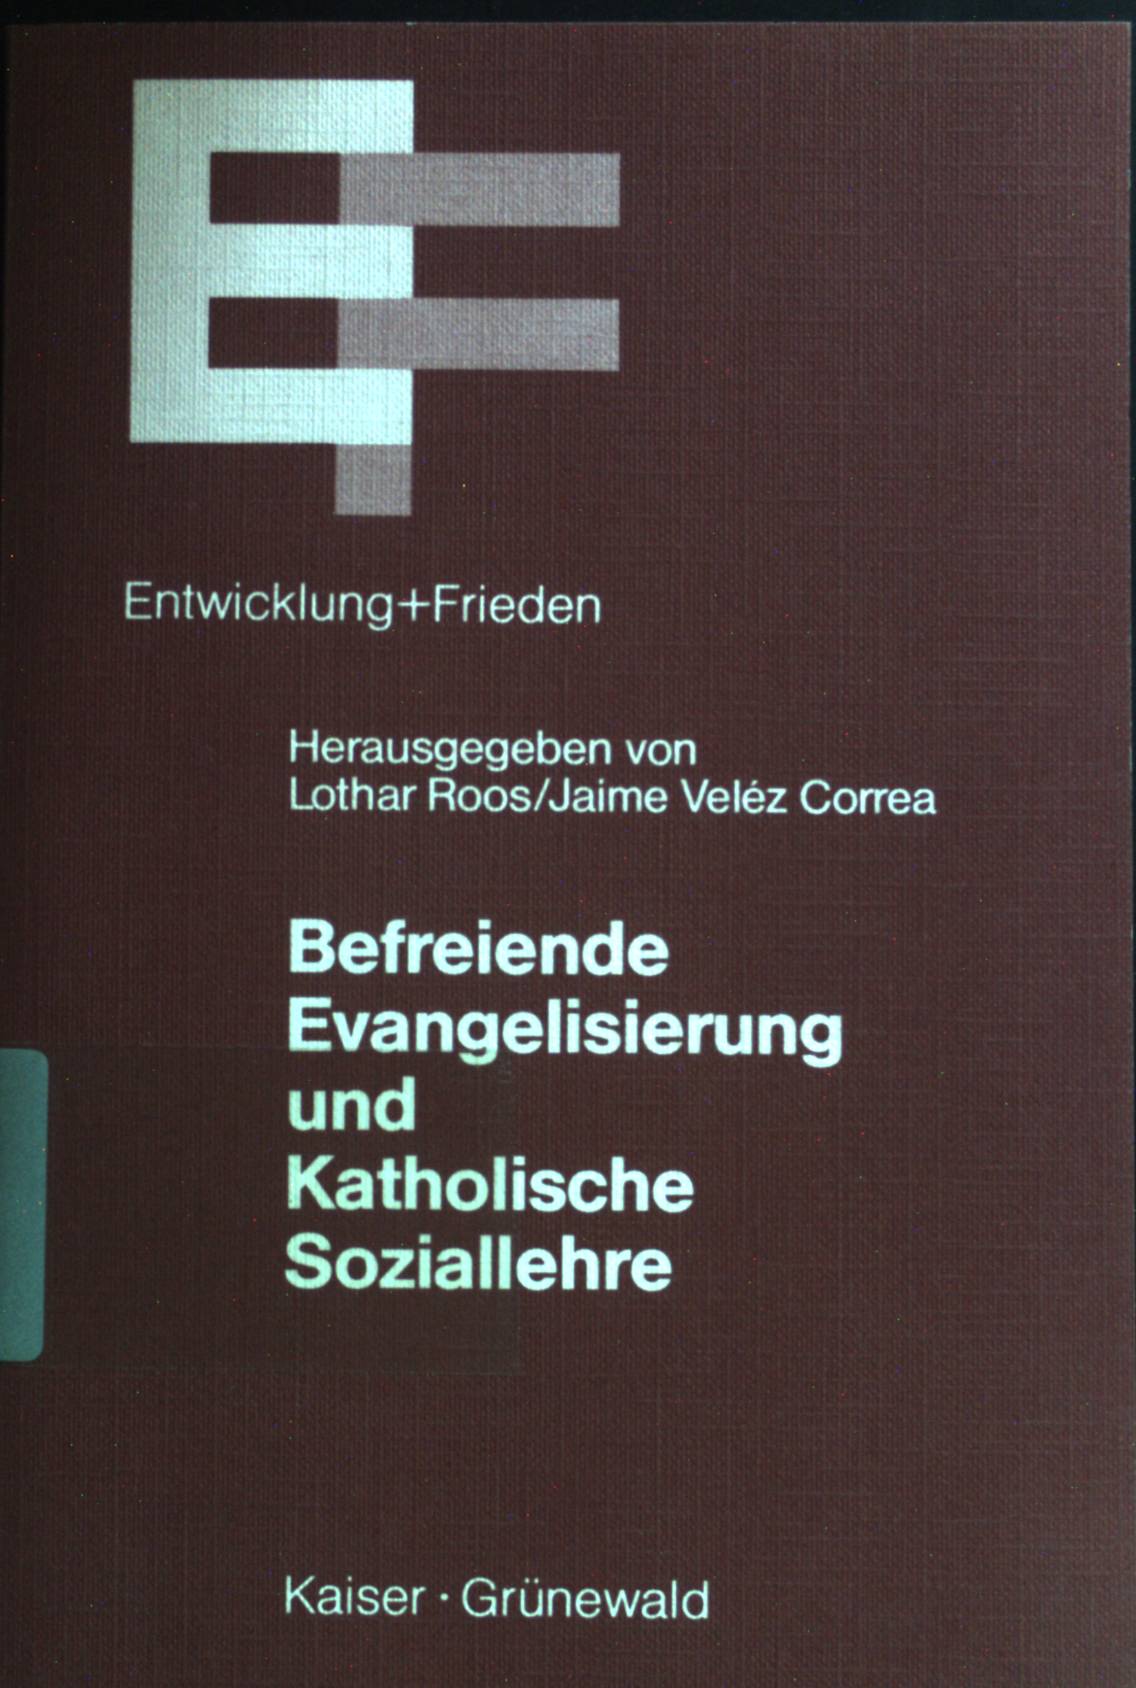 Befreiende Evangelisierung und katholische Soziallehre. - Roos, Lothar und Jaime Veléz Correa